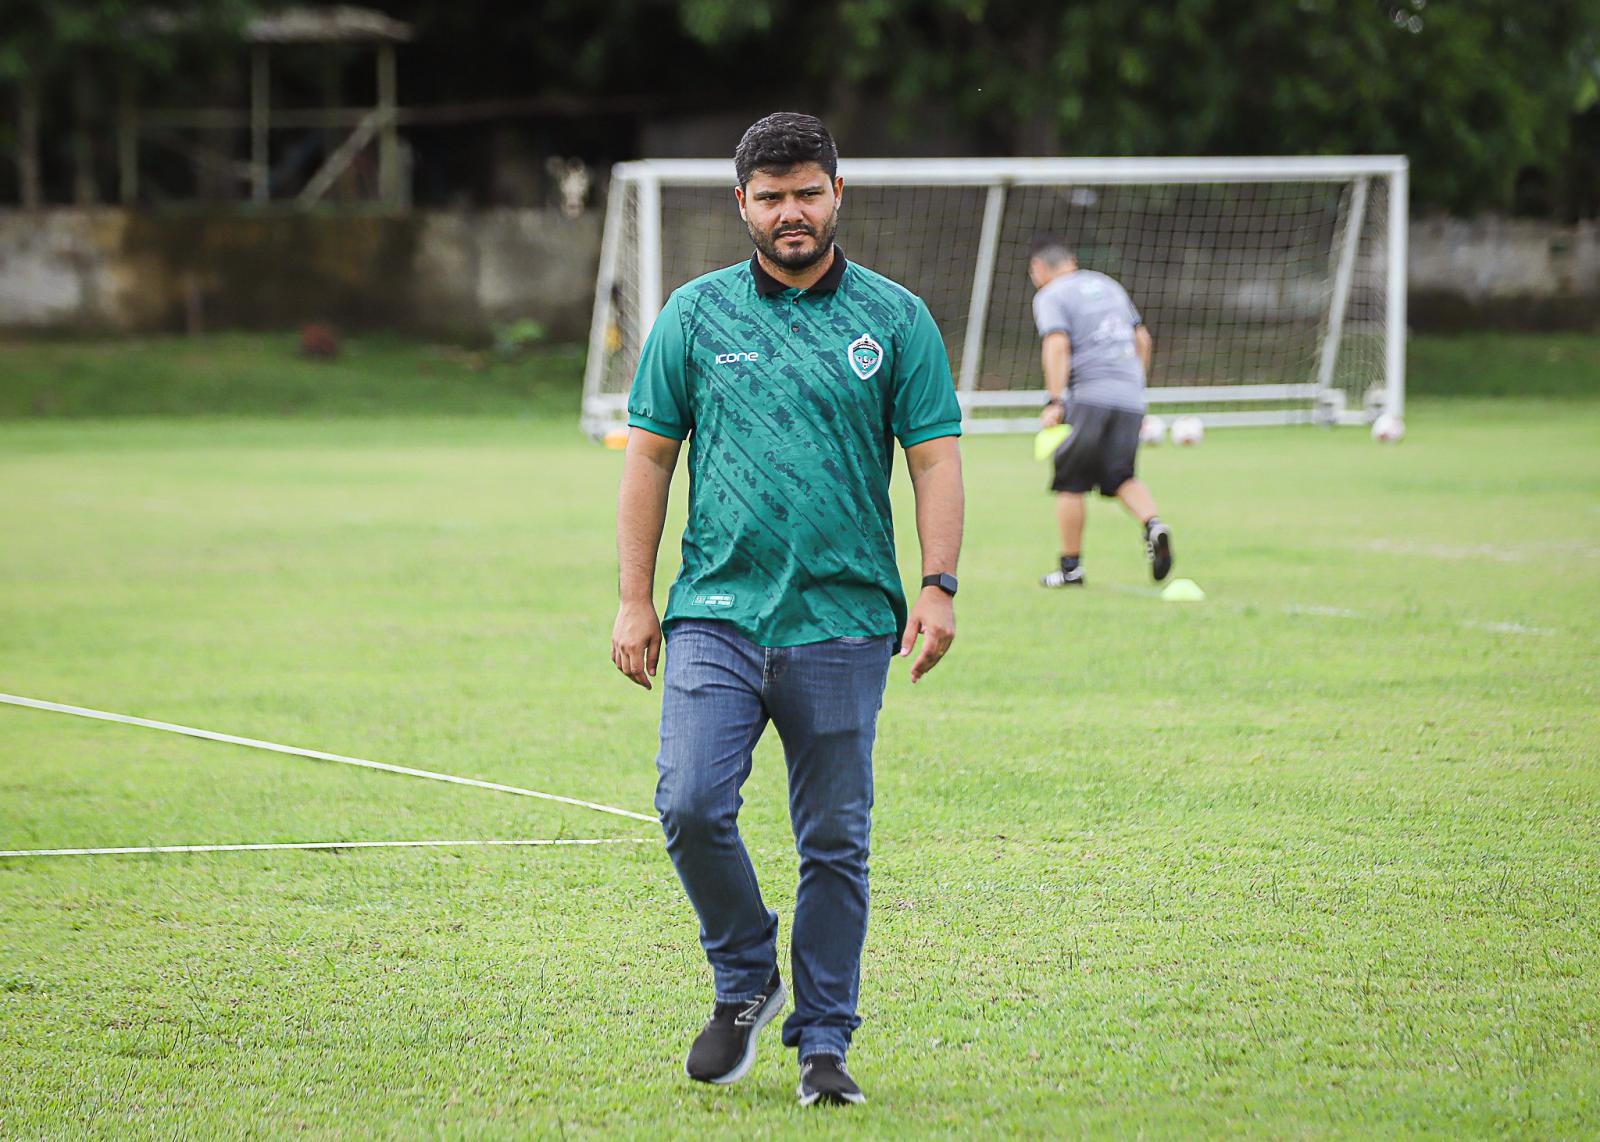 VAR no Amazonense agrada o Manaus FC: “Já é um avanço”, diz VP de futebol do clube